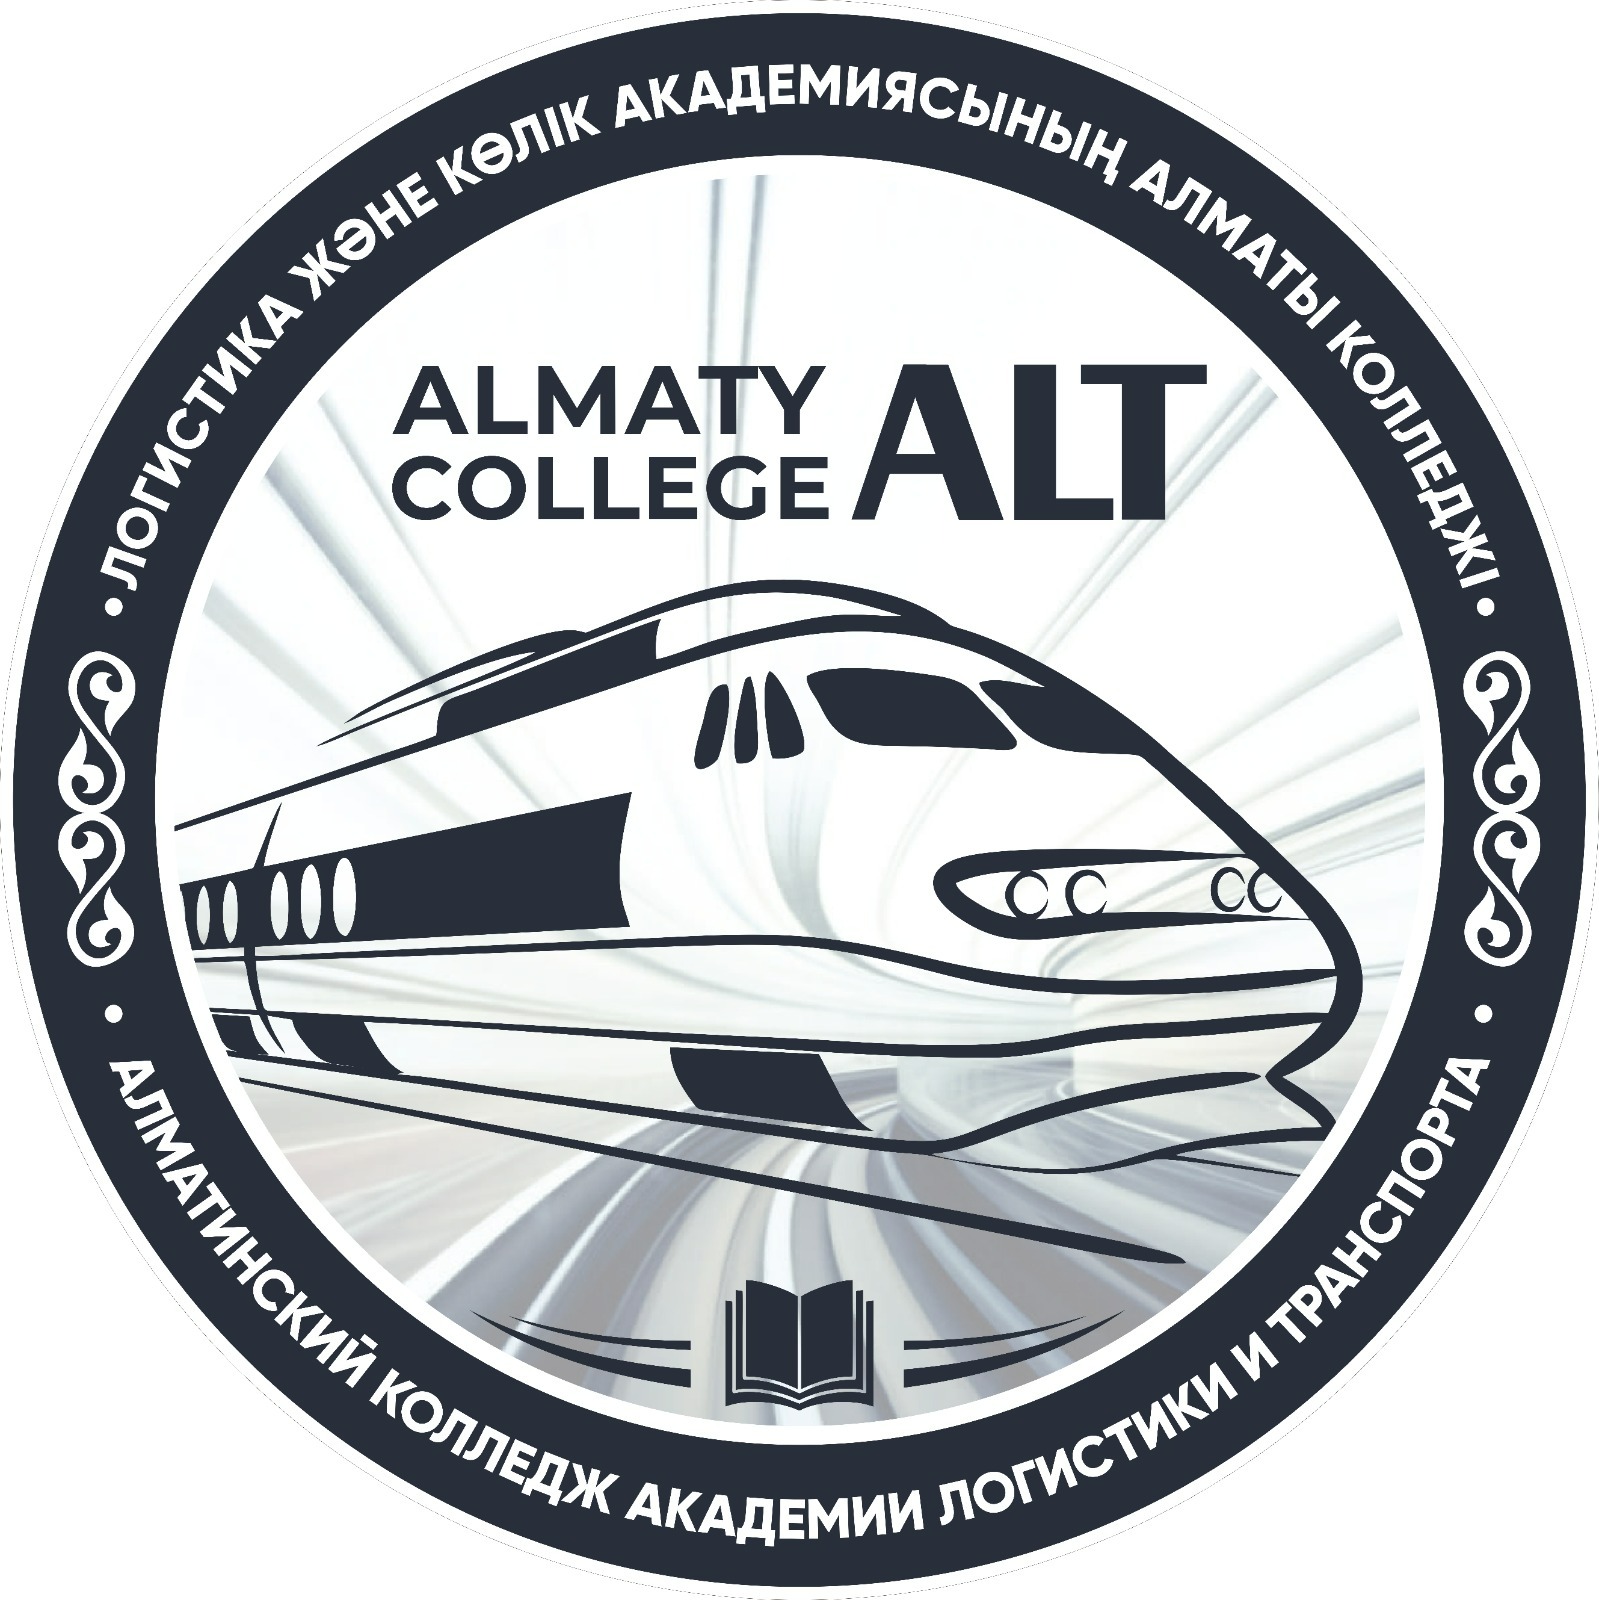 Алматинский колледж академии логистики и транспорта